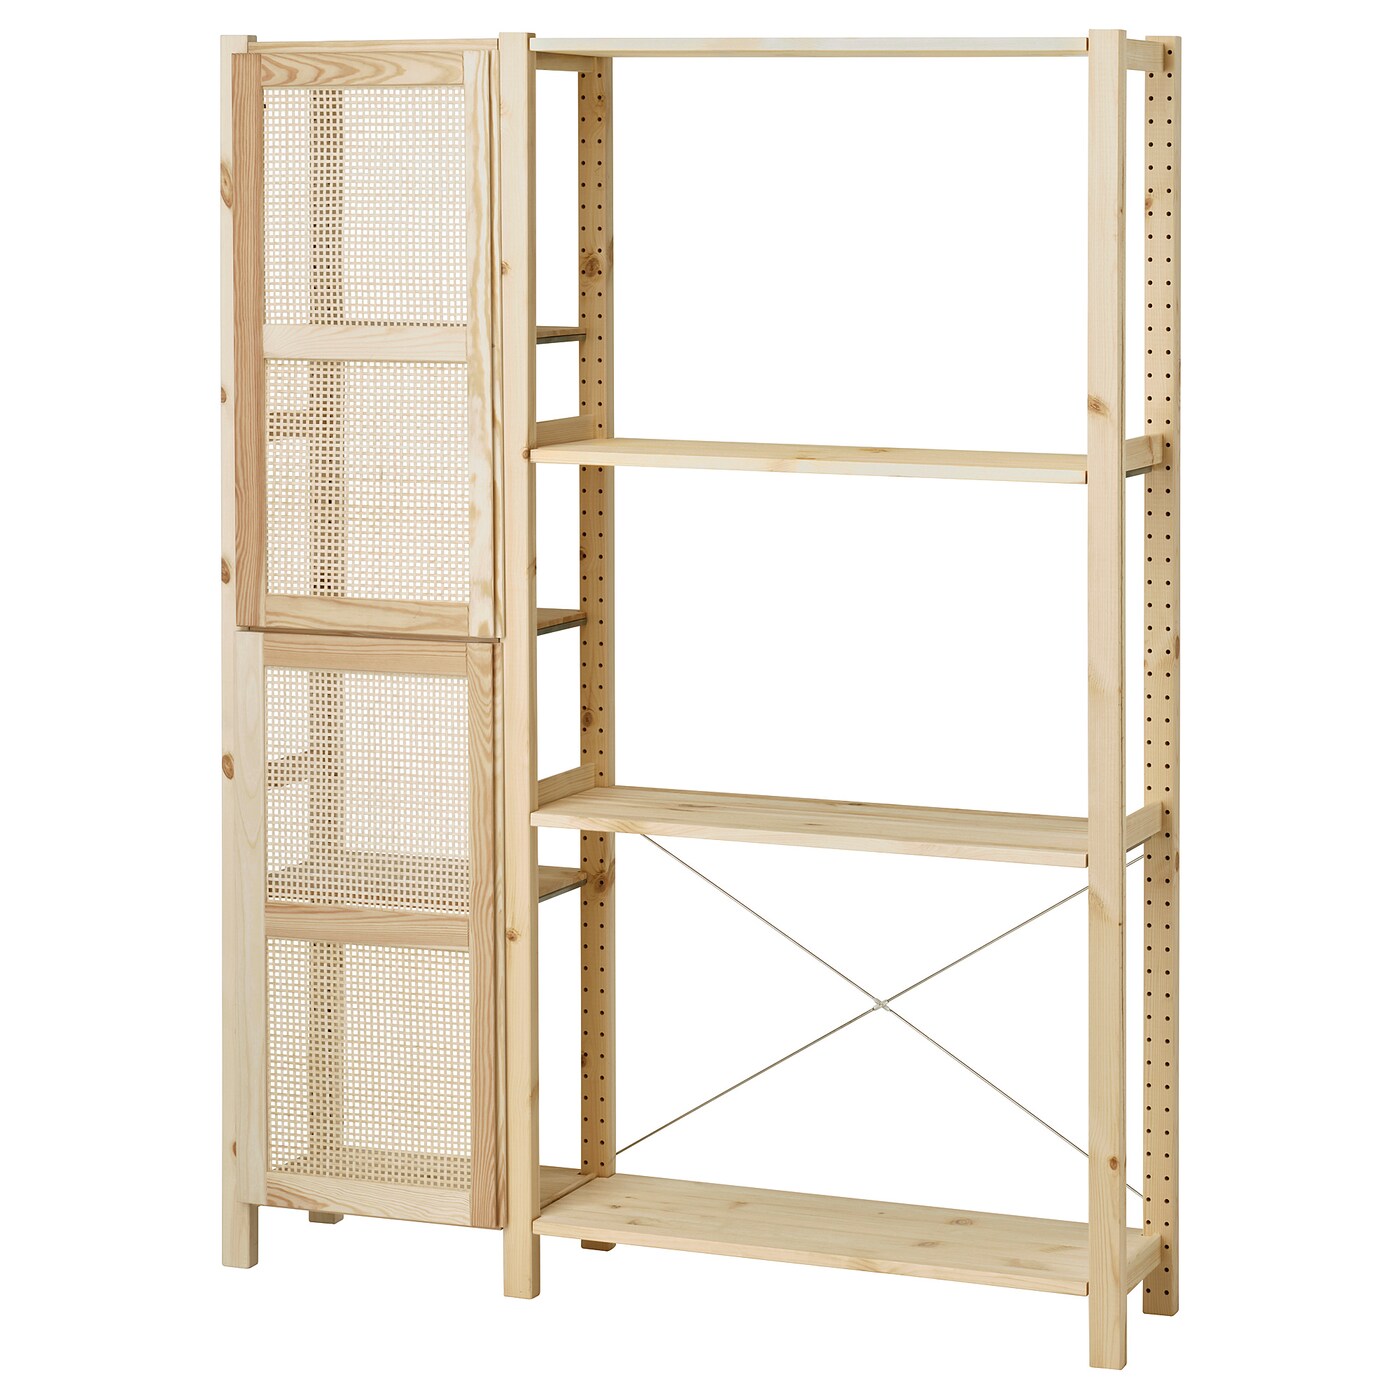 Книжный шкаф - IVAR IKEA/ ИВАР ИКЕА,  179х134 см, под беленый дуб